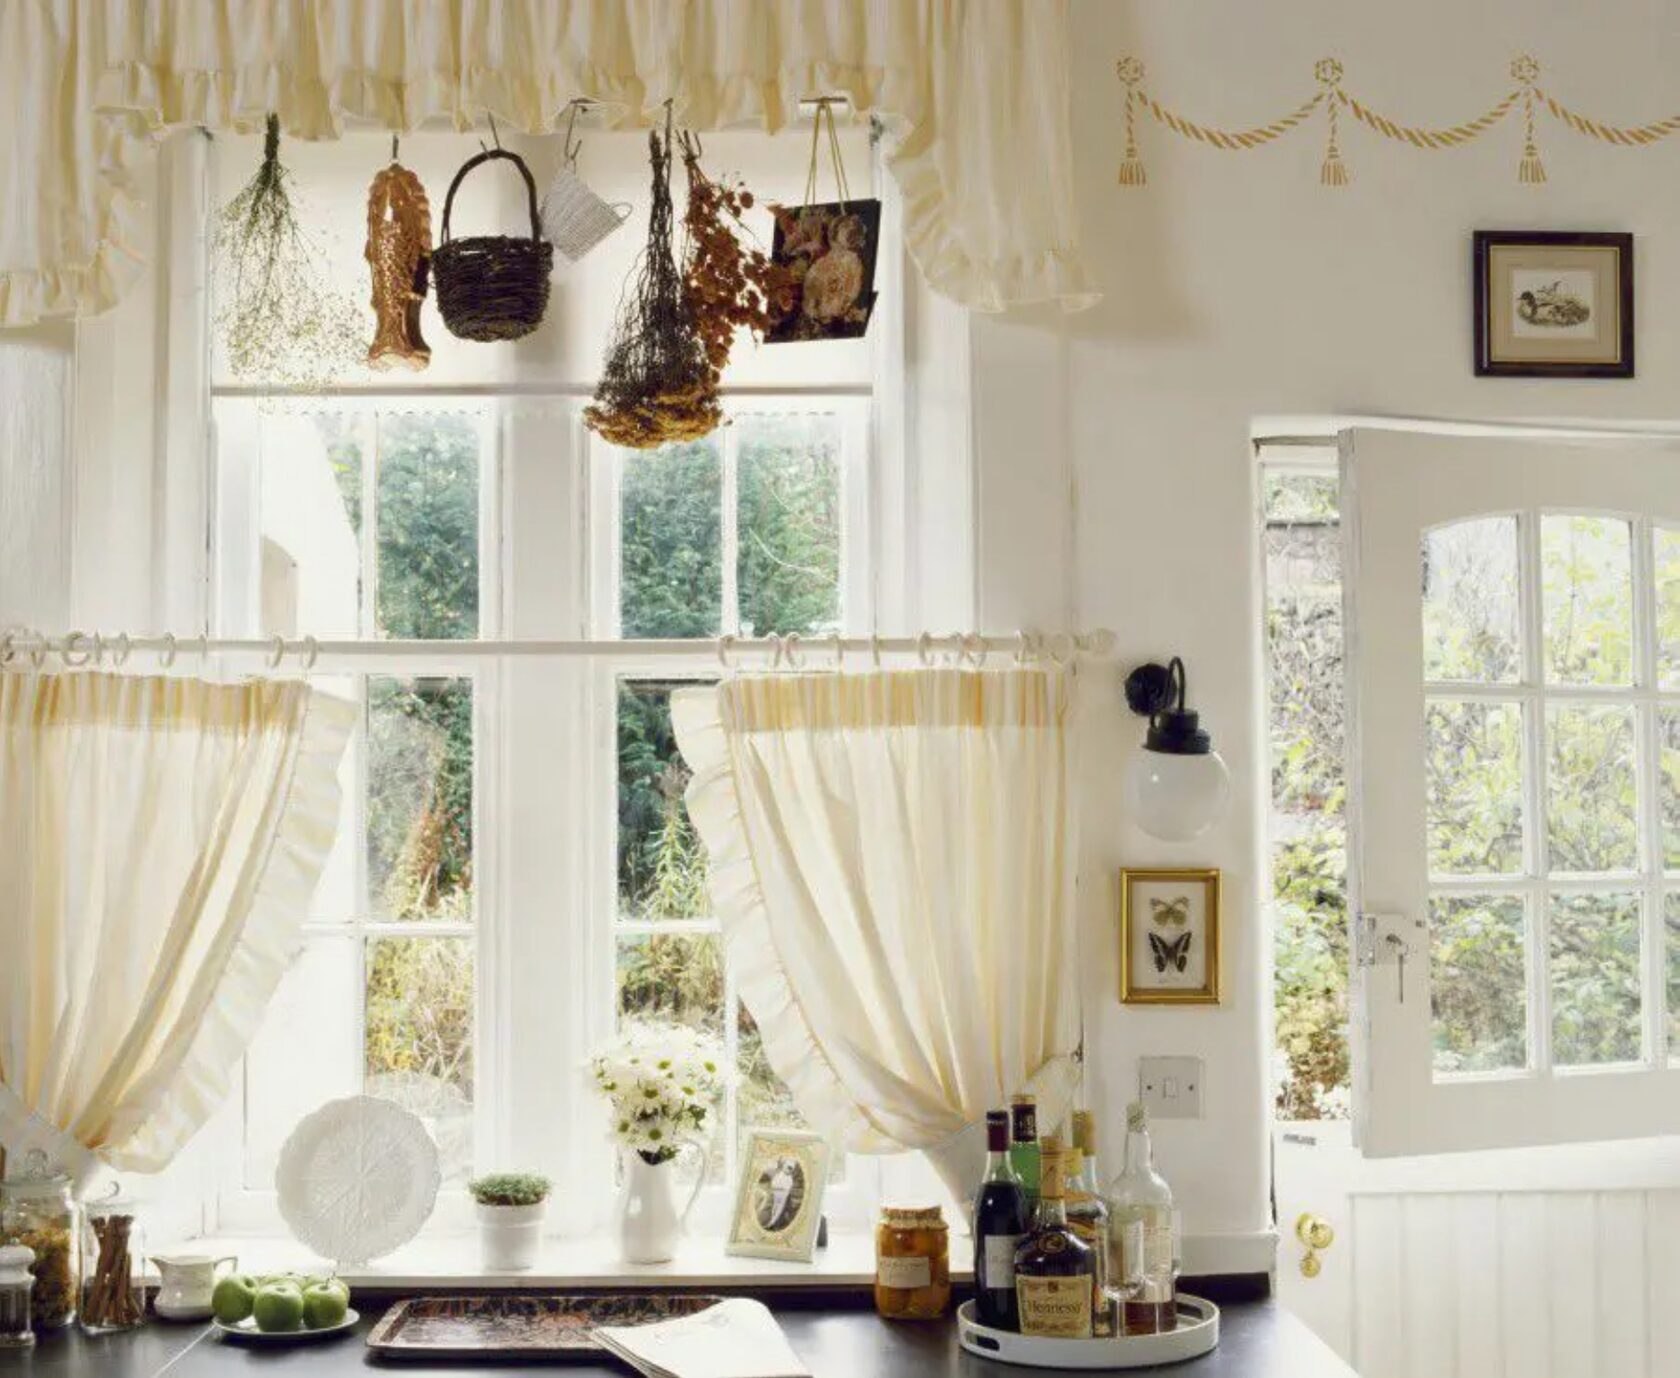 Окна на кухне купить. Шторы на кухню в деревенском стиле. Занавески на окна в деревенском стиле. Декор окна на кухне. Кухонные занавески в деревенском стиле.